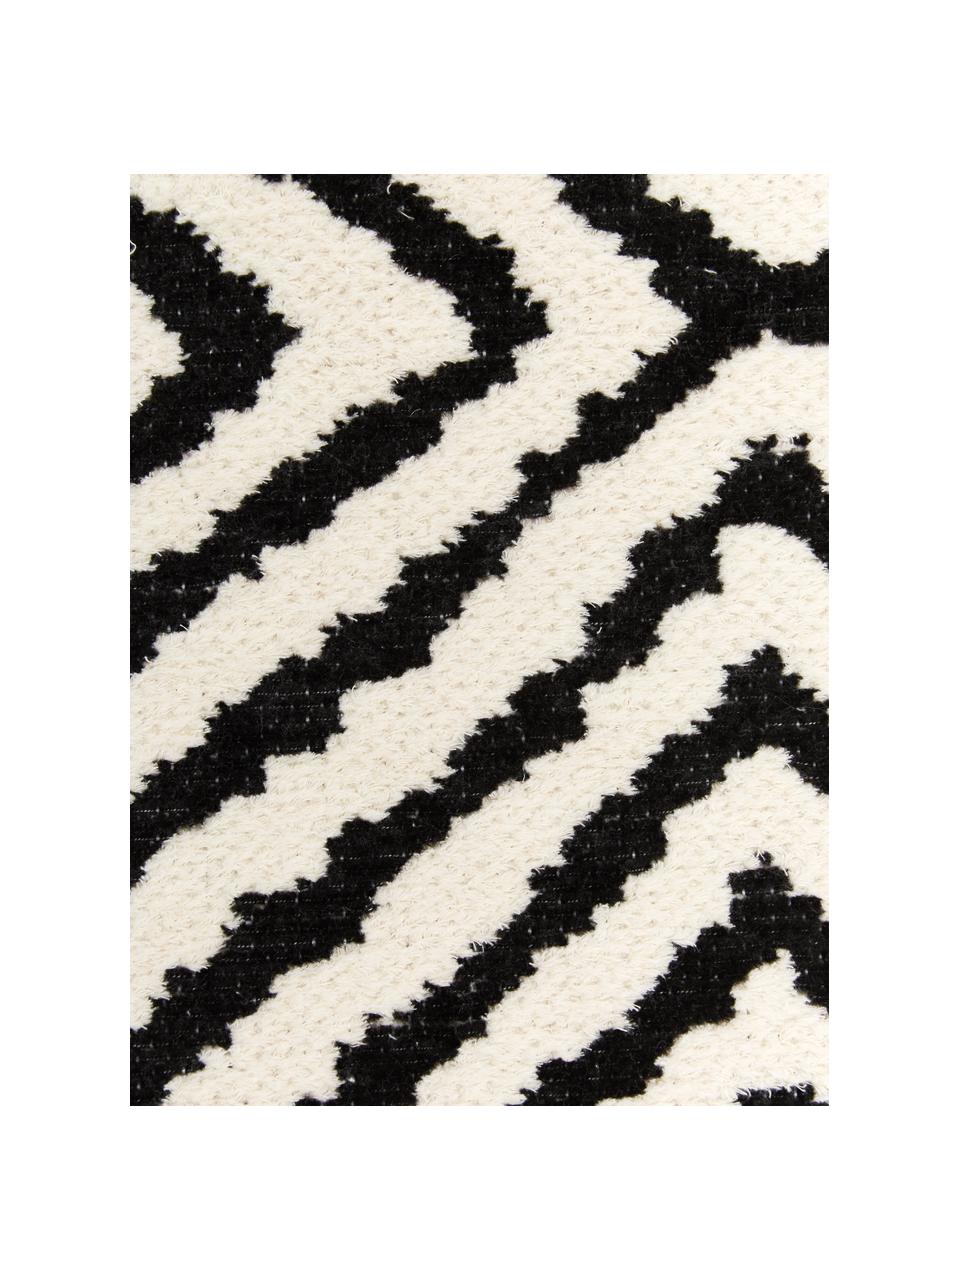 Kelimteppich Mozaik in Schwarz/Weiß, 90% Baumwolle, 10% Polyester, Schwarz, B 120 x L 180 cm (Größe S)